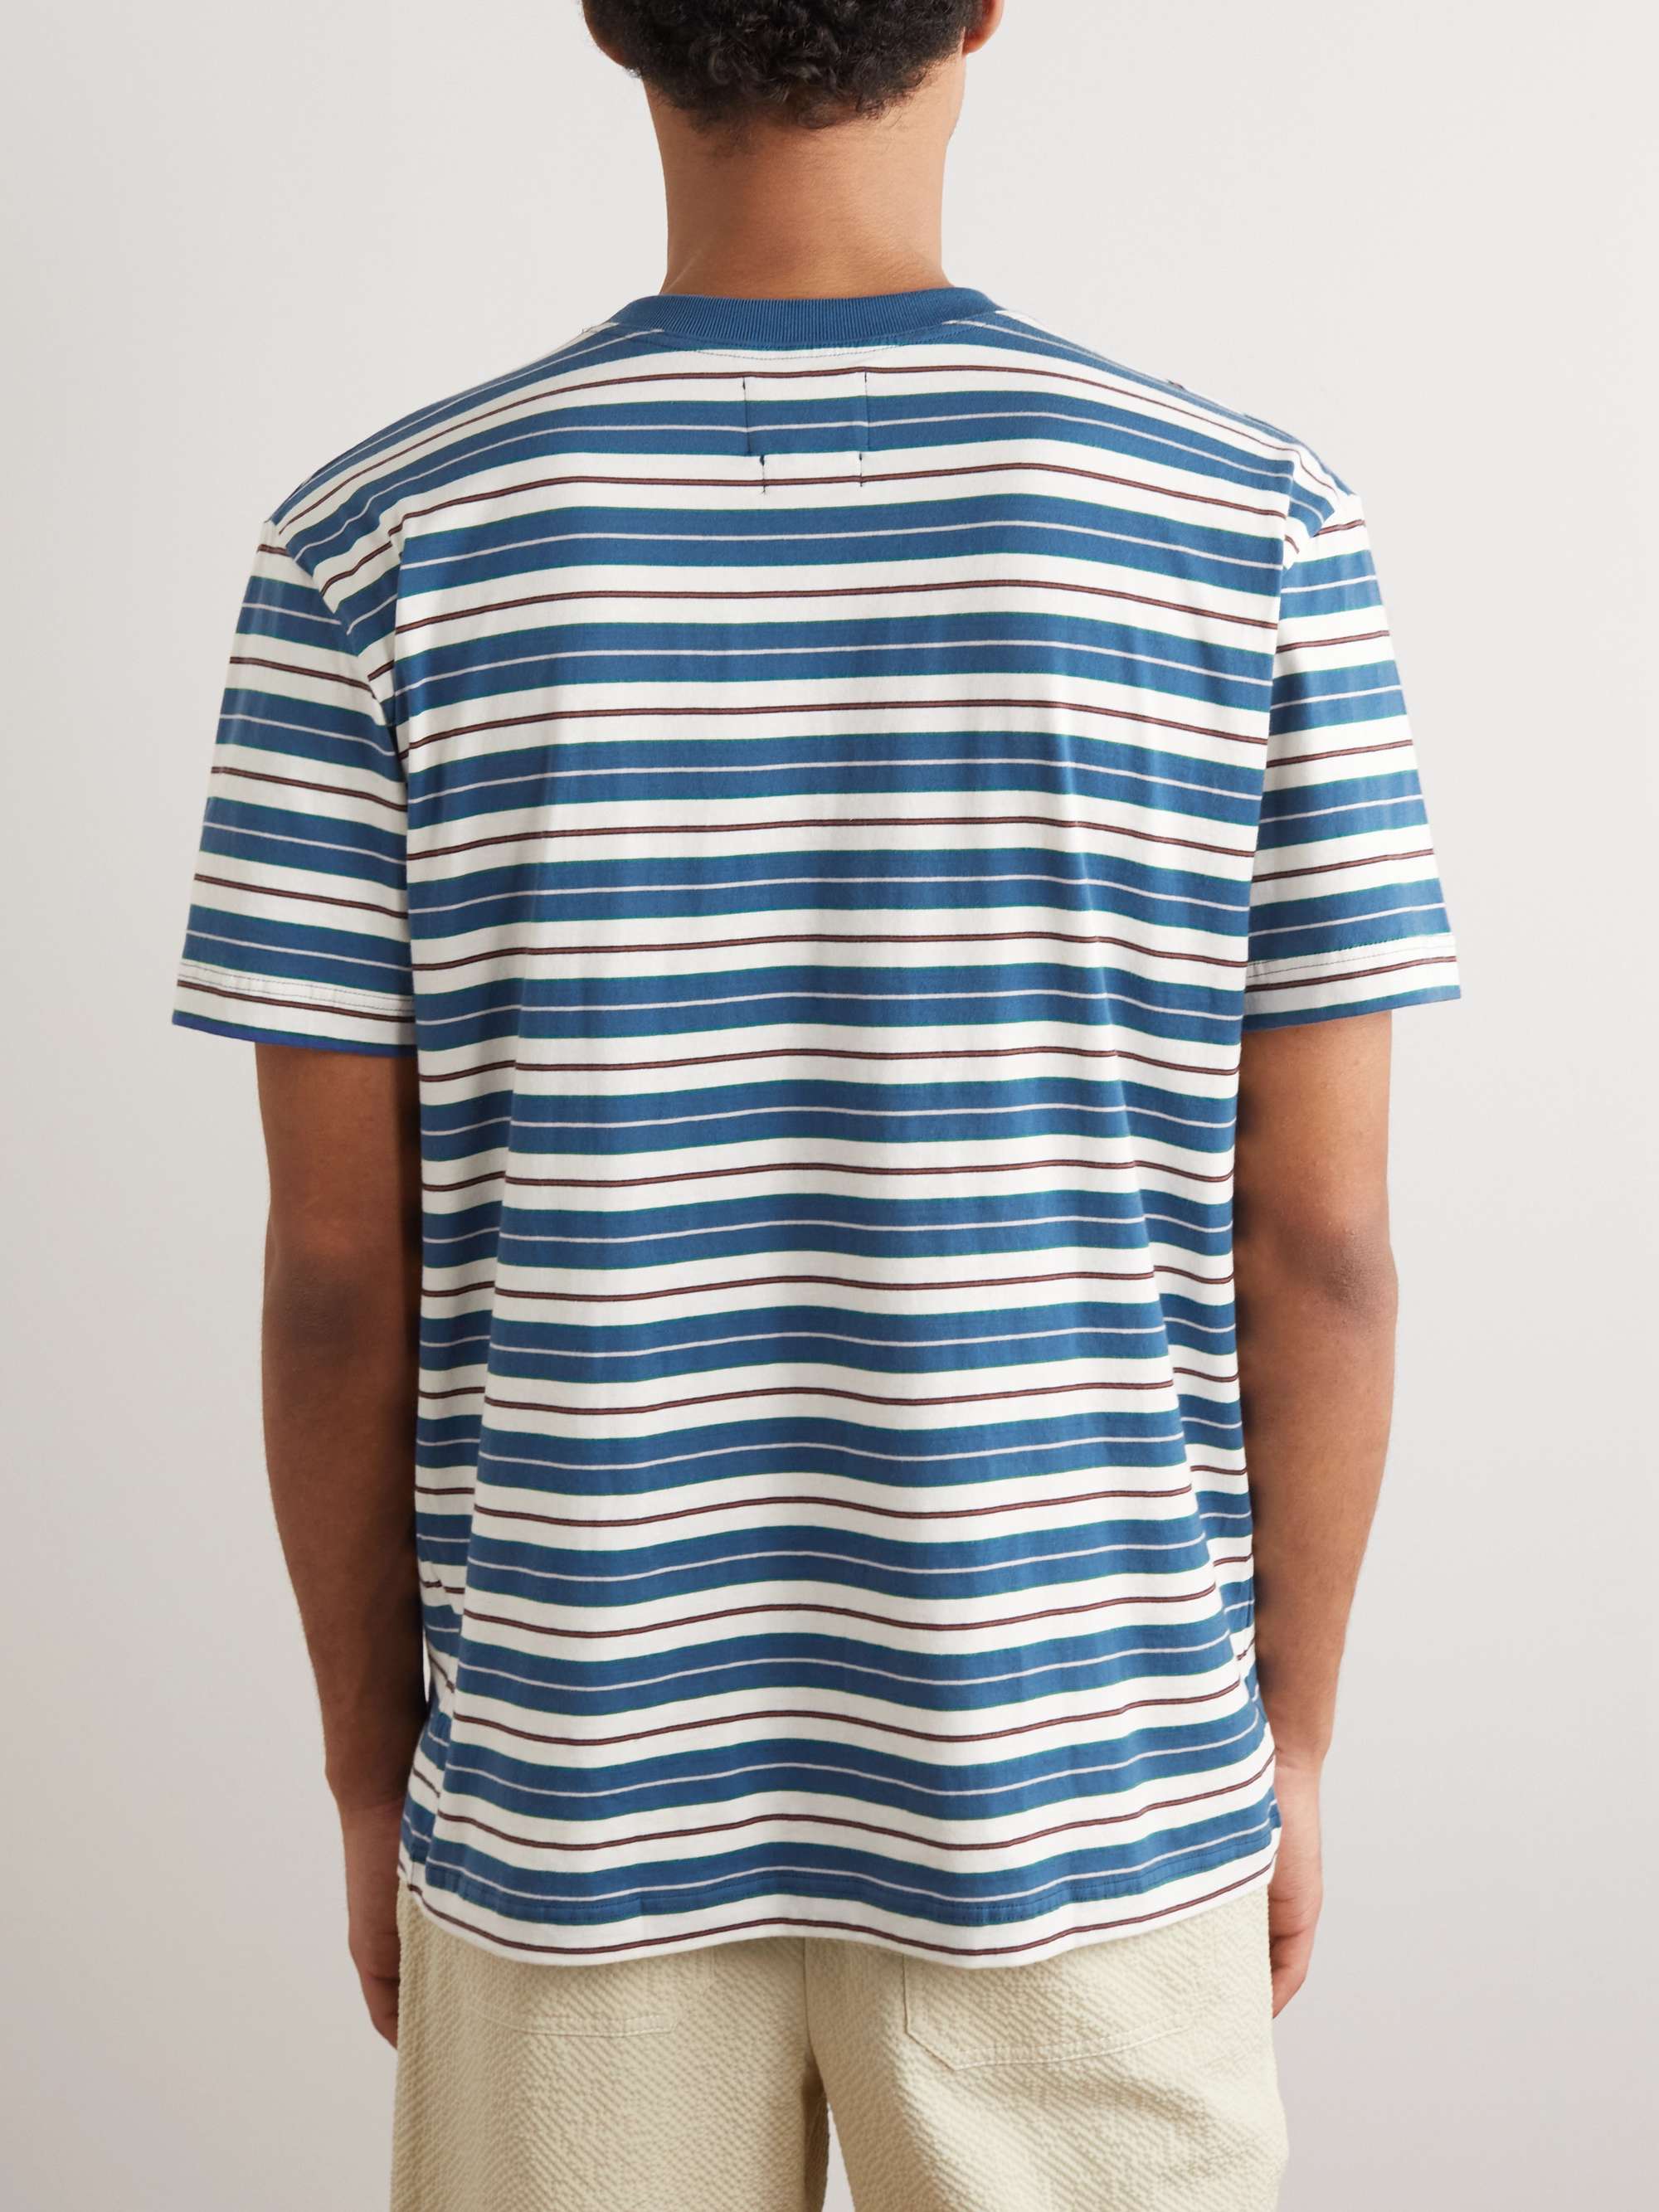 HOWLIN' Striped Cotton-Jersey T-Shirt